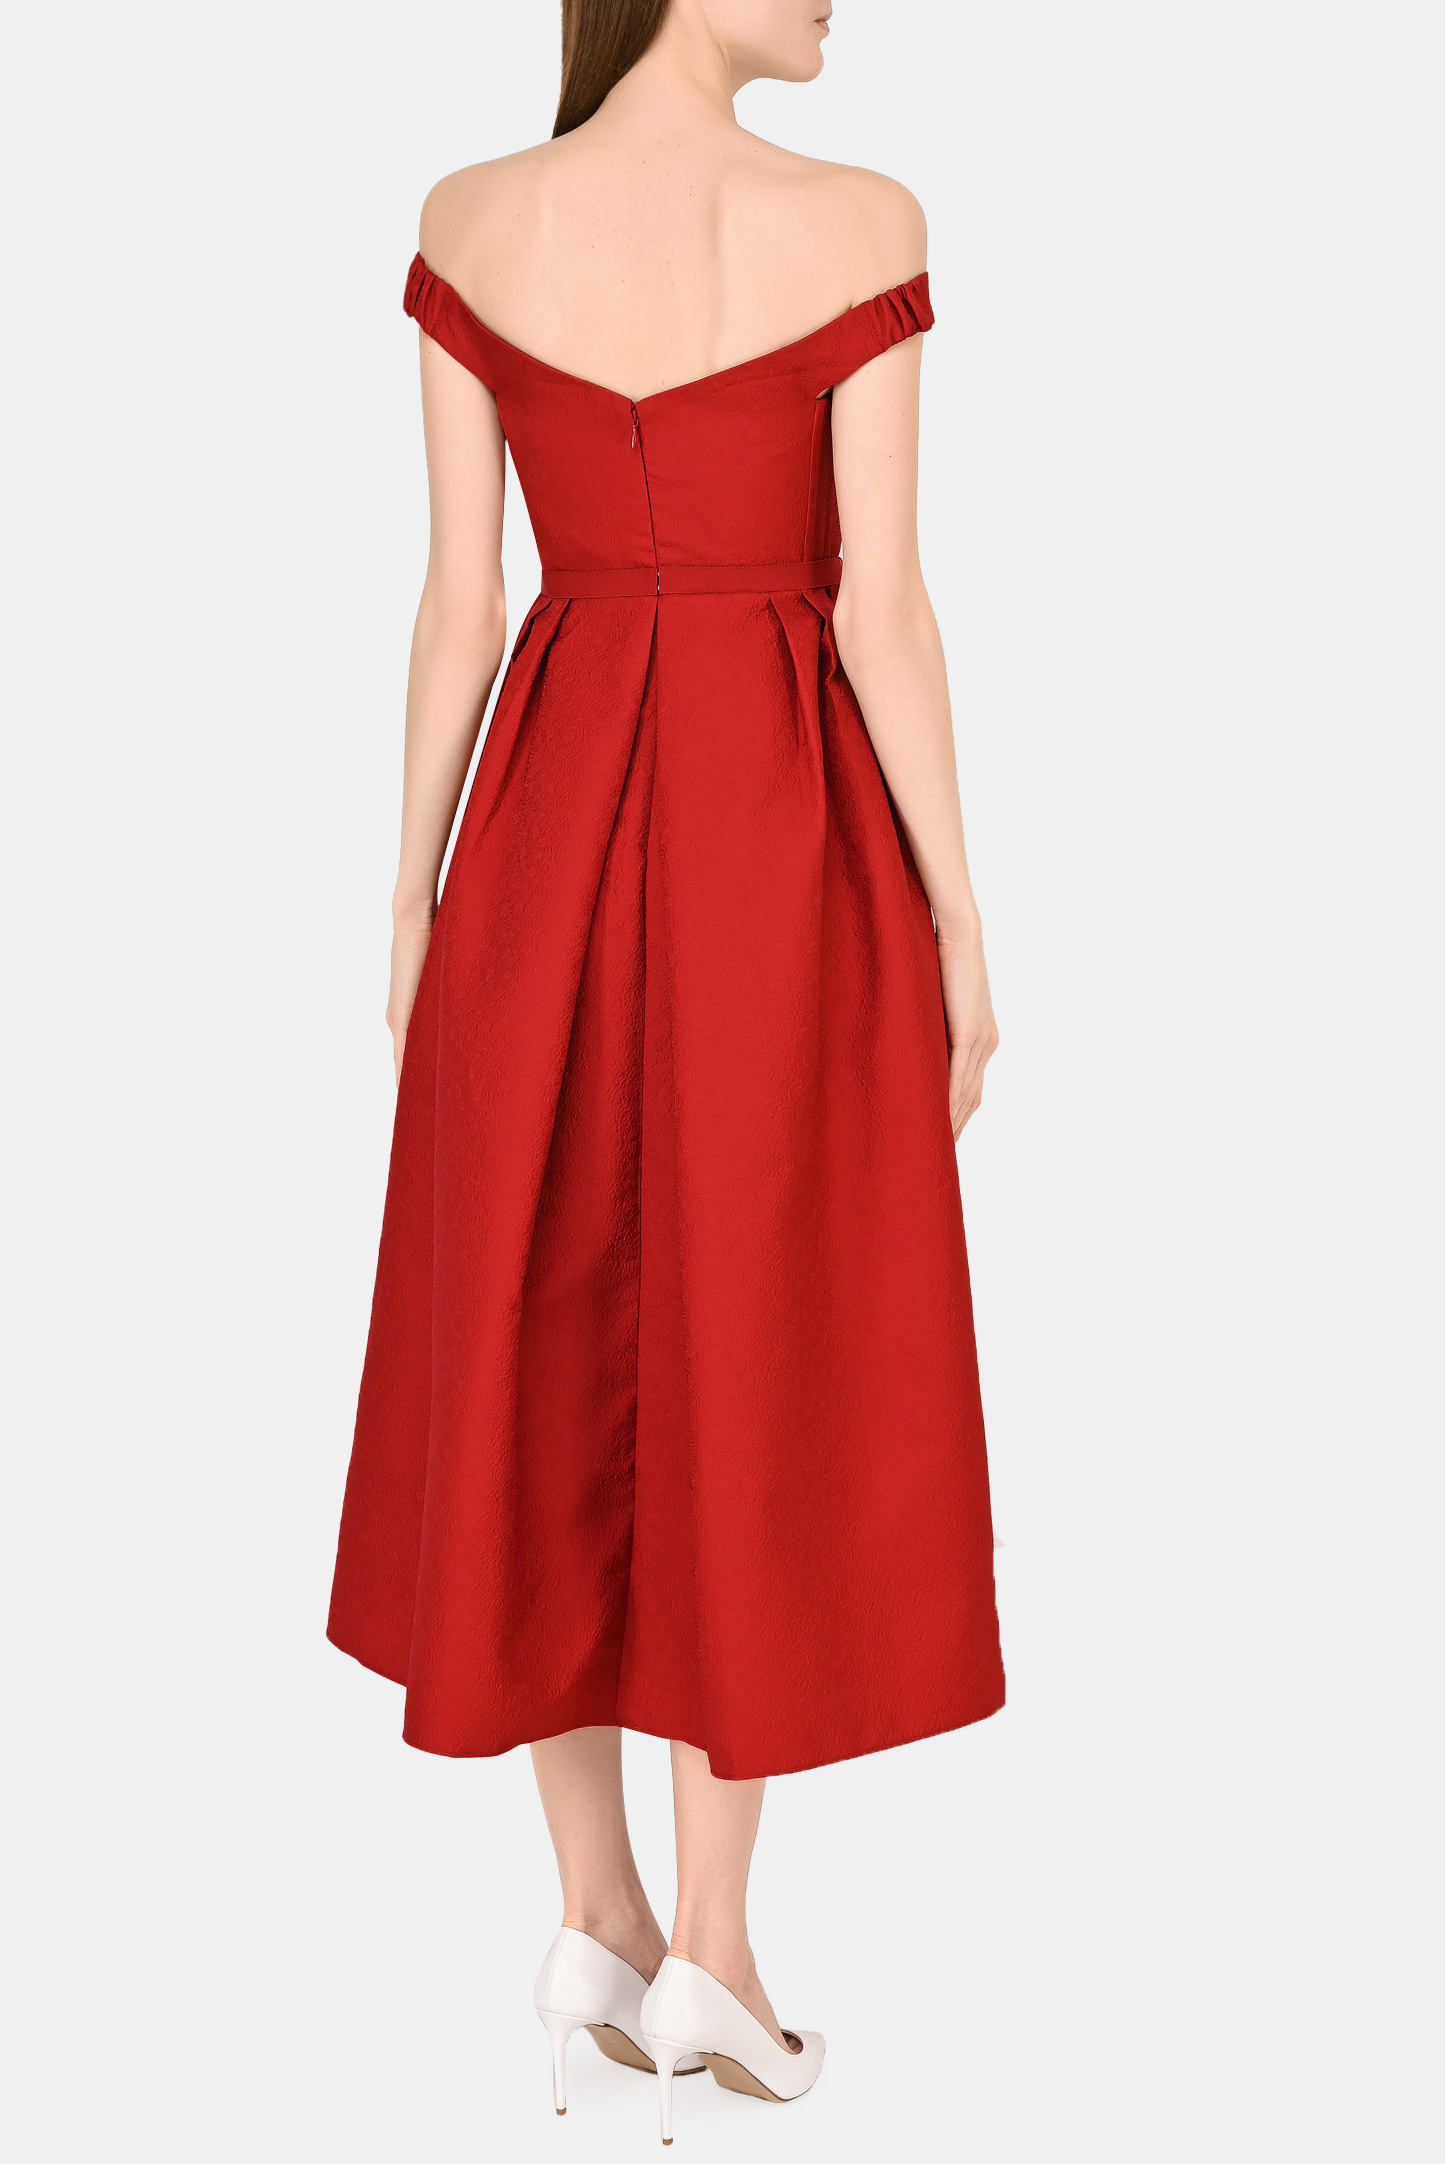 Платье SELF PORTRAIT RS22-044, цвет: Бордовый, Женский